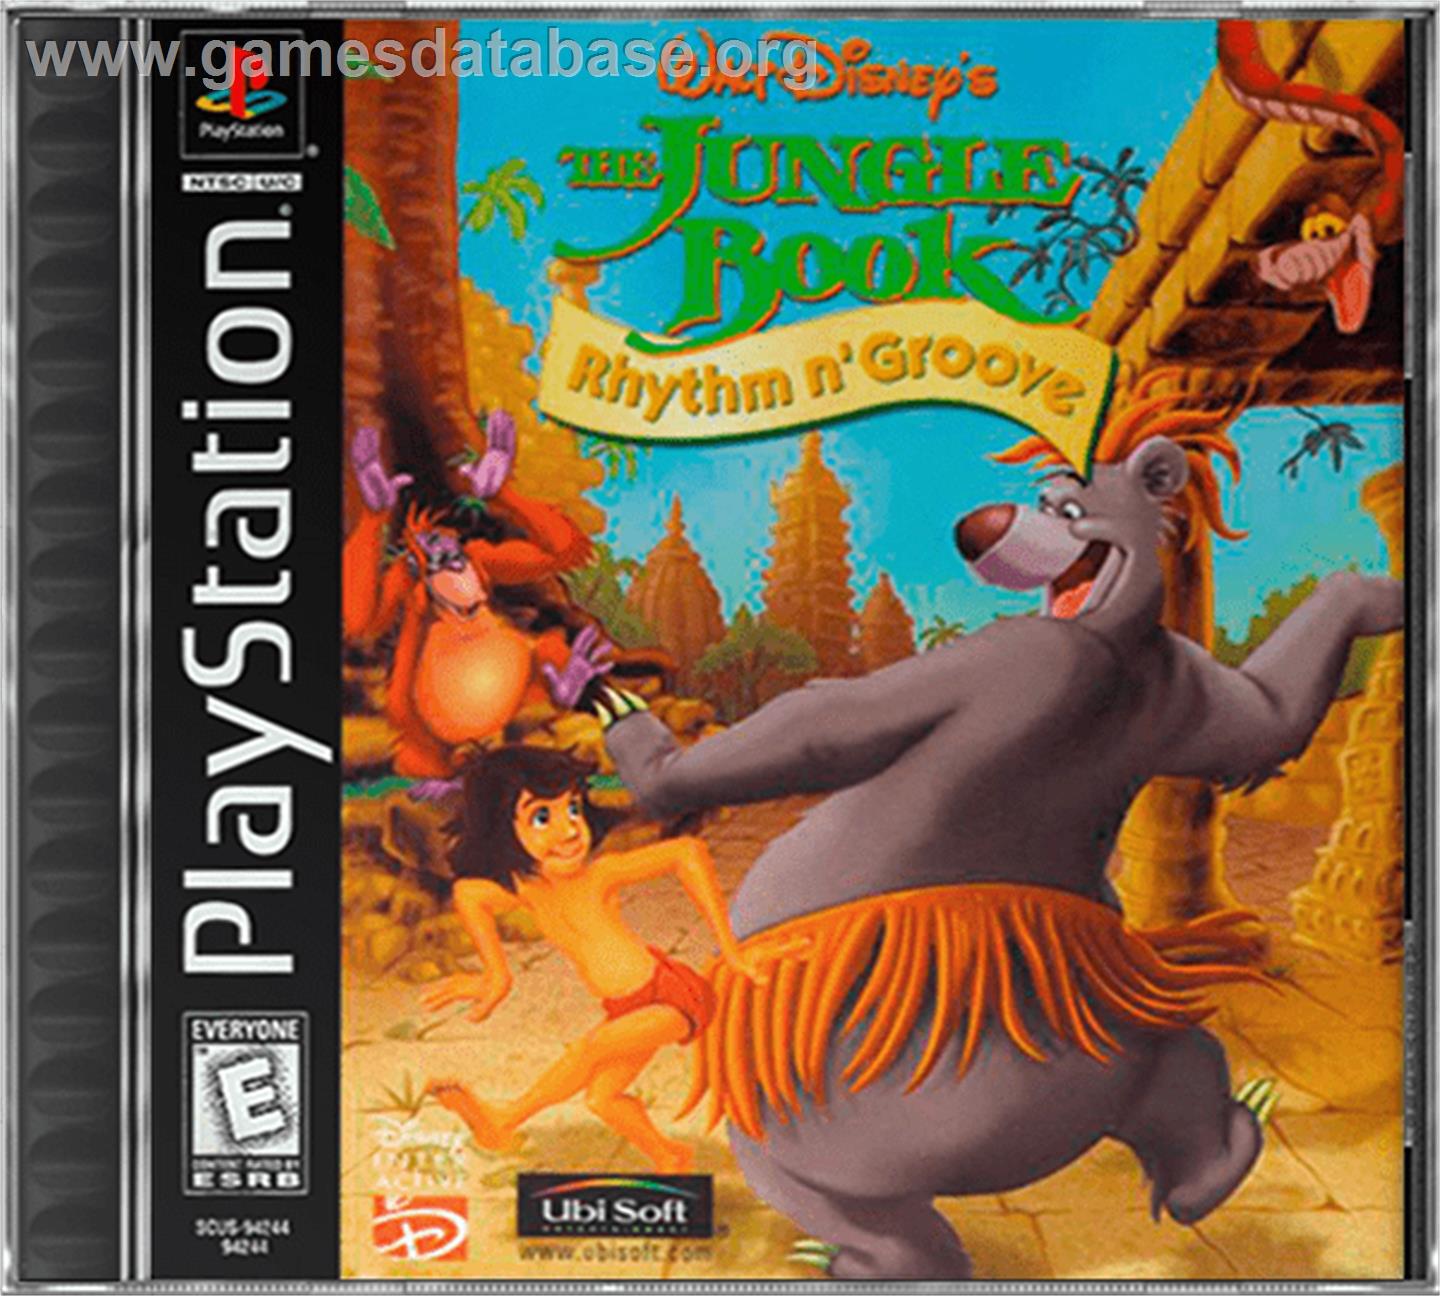 Walt Disney's The Jungle Book: Rhythm n' Groove - Sony Playstation - Artwork - Box